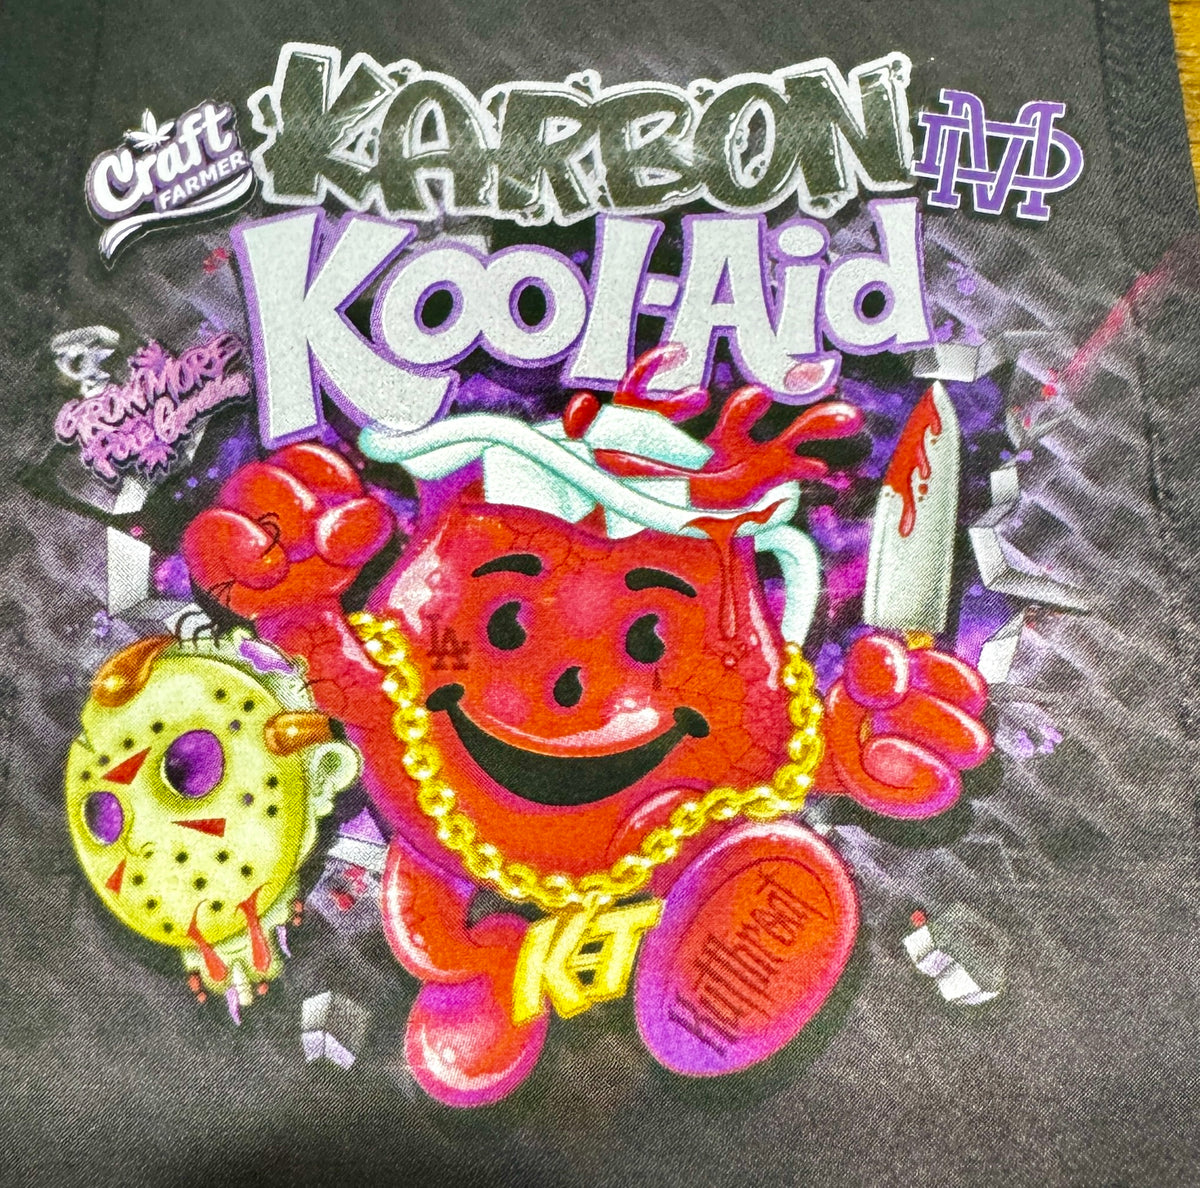 Karbon KoolAid Limited Tshirt Pack